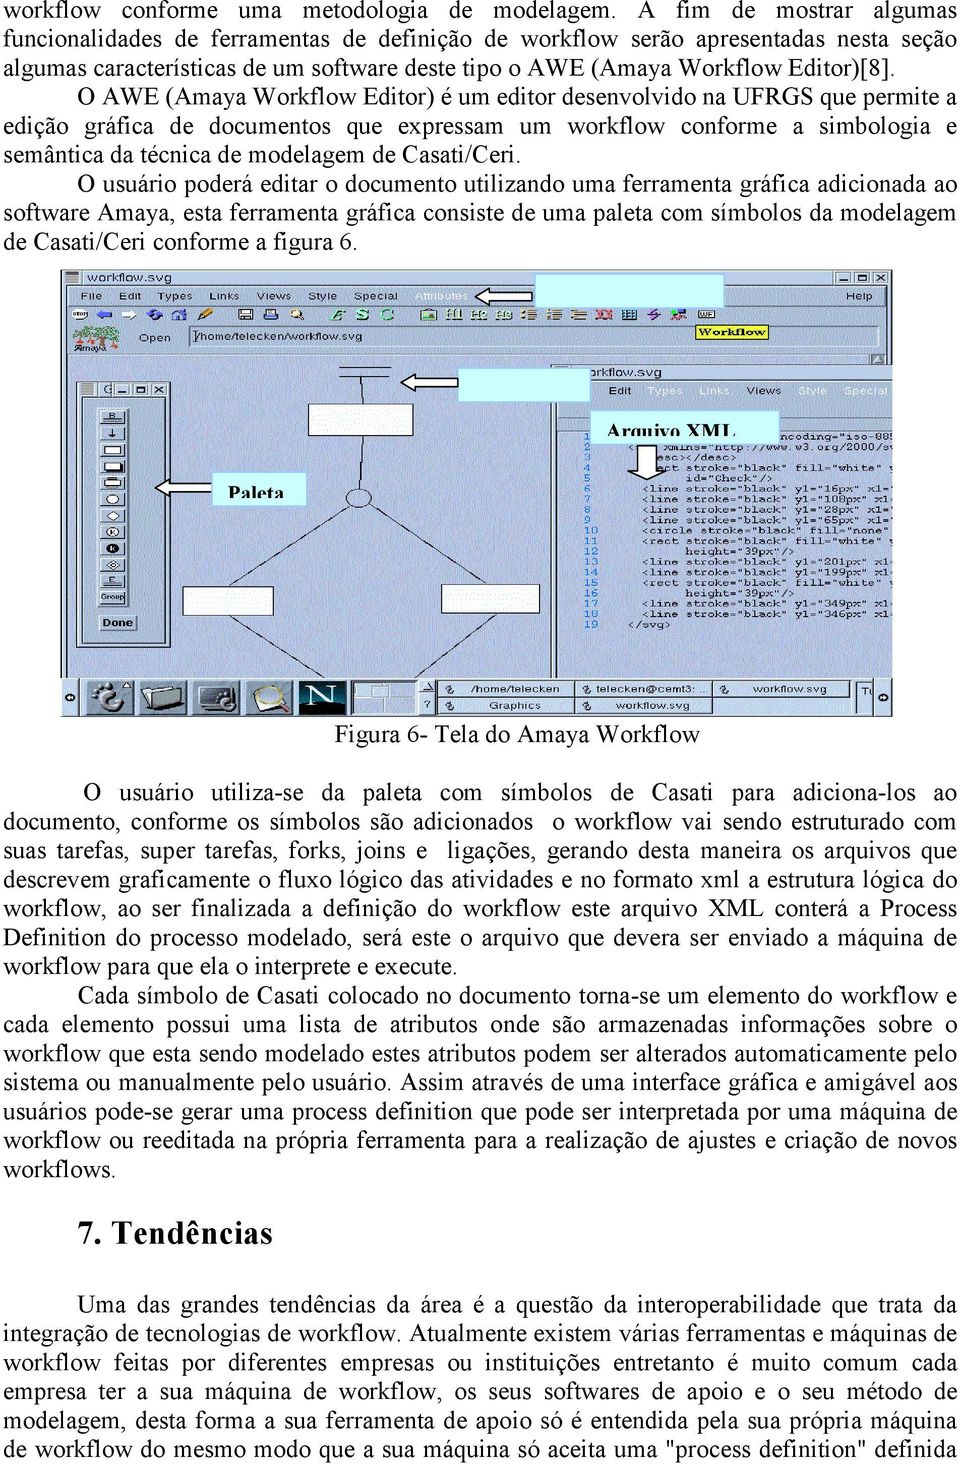 O AWE (Amaya Editor) é um editor desenvolvido na UFRGS que permite a edição gráfica de documentos que expressam um workflow conforme a simbologia e semântica da técnica de modelagem de Casati/Ceri.